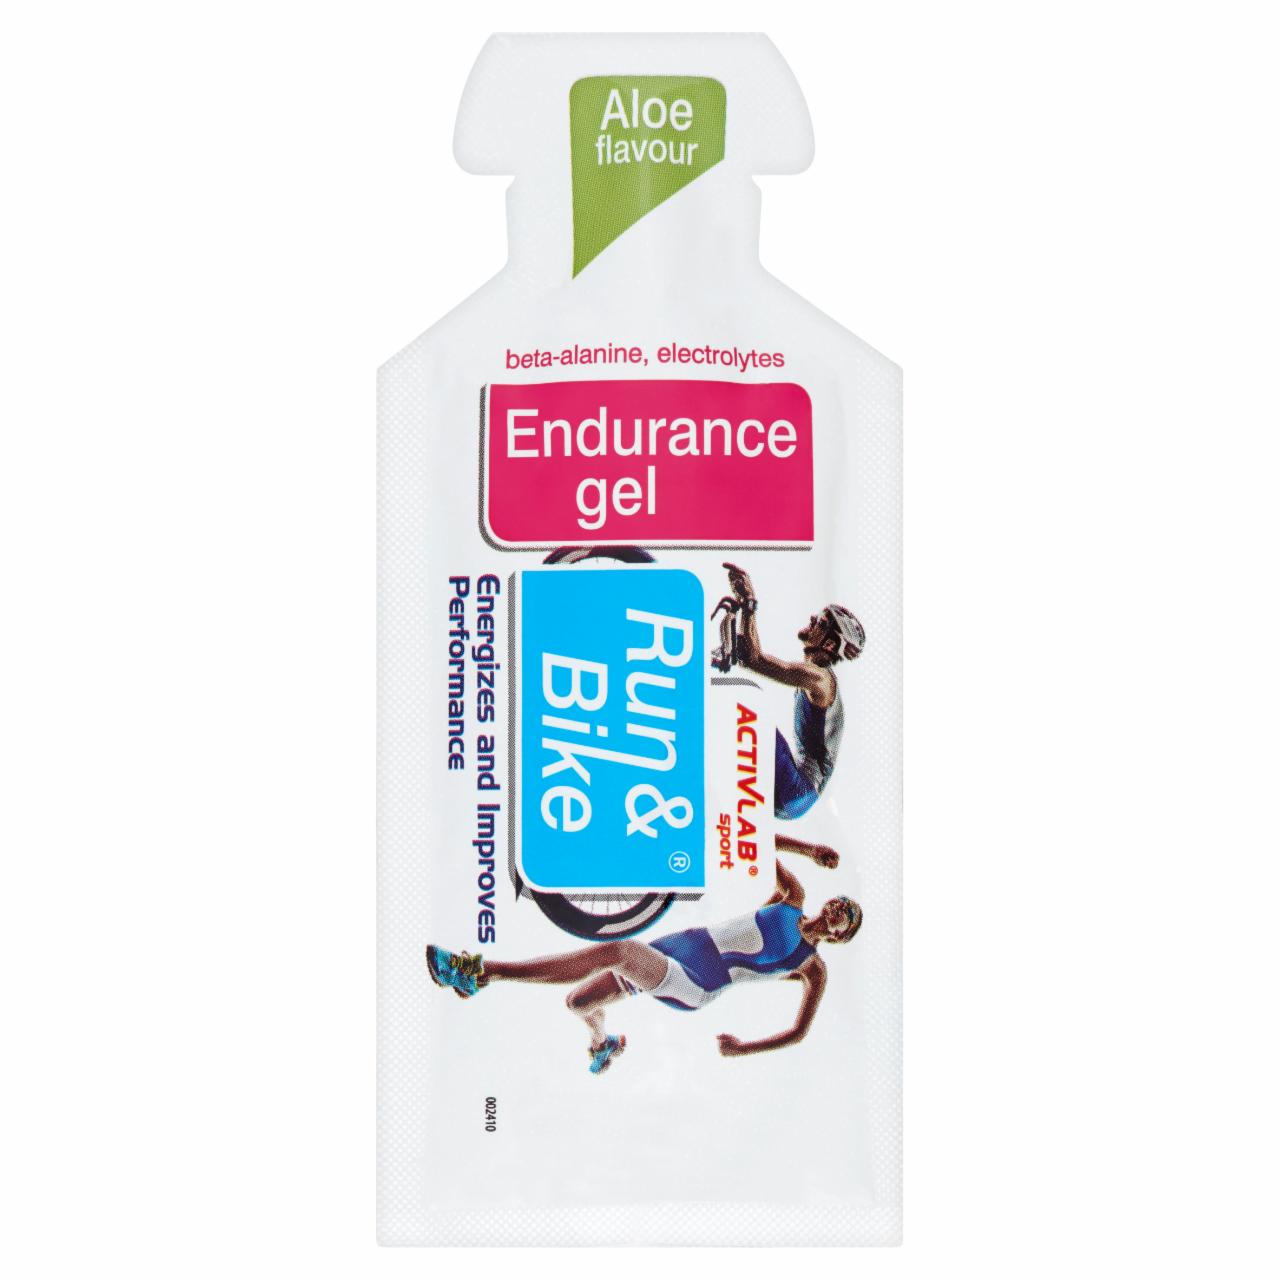 Zdjęcia - Activlab R&B Endurance Gel Żel energetyczny z beta alaniną o smaku aloesu 40 g